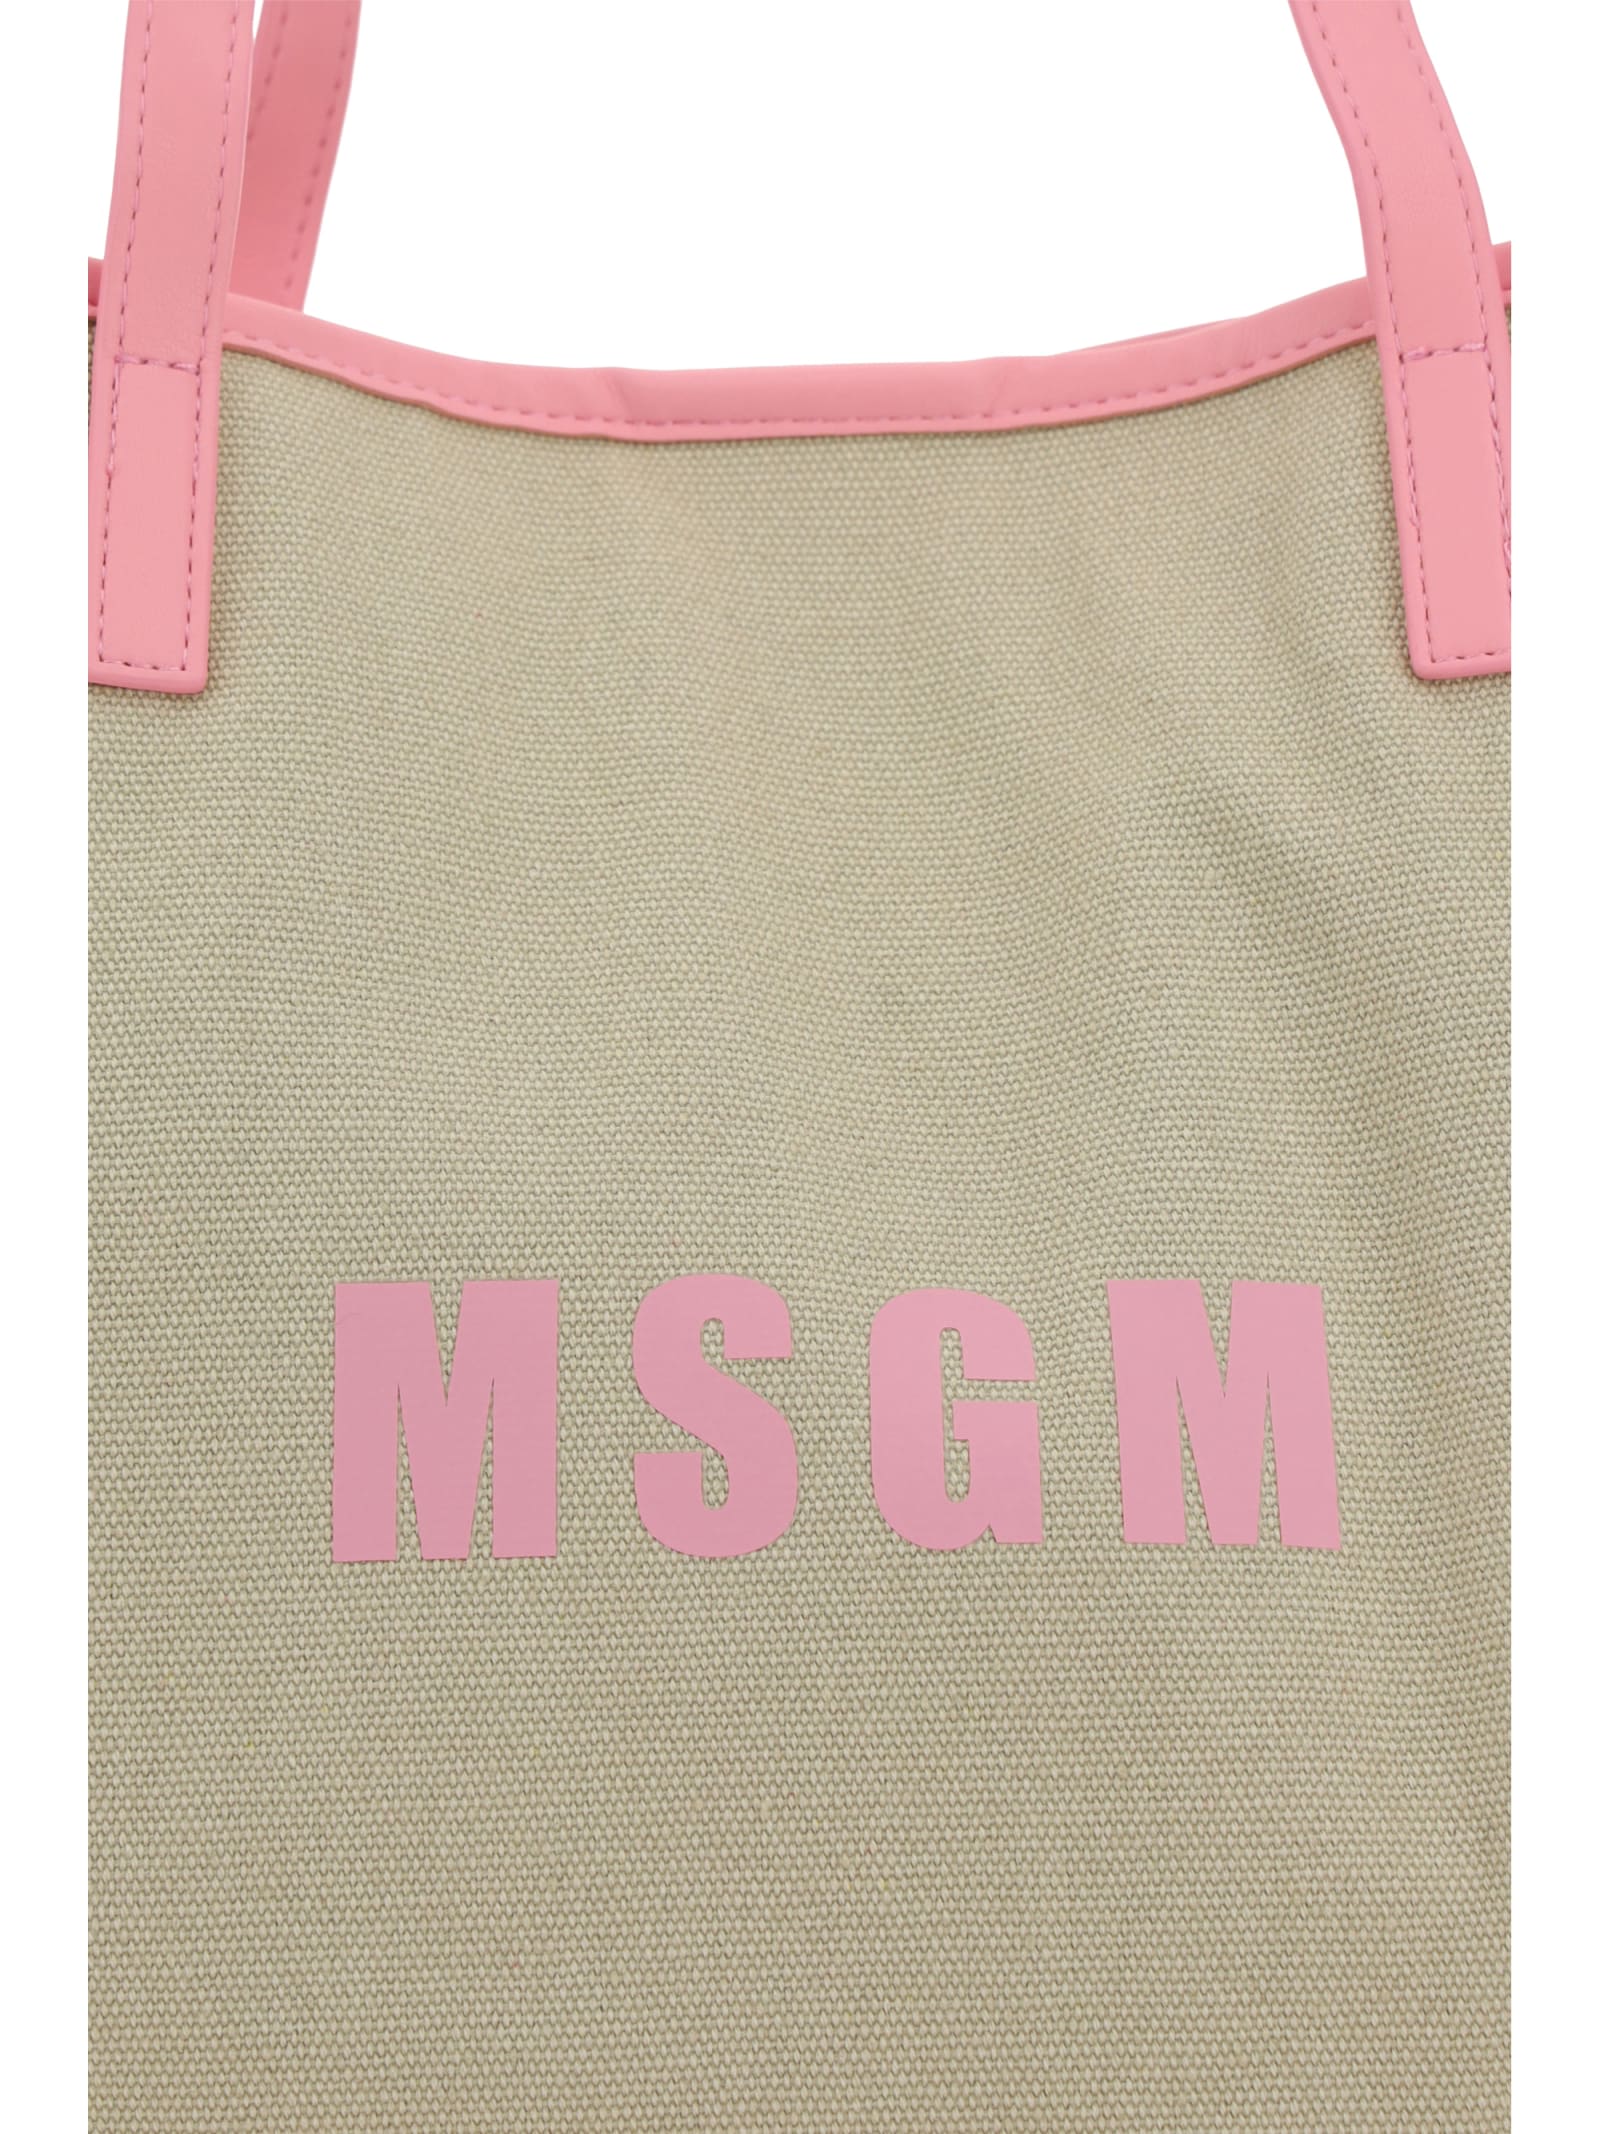 Shop Msgm Medium Shopping Shoulder Bag In Pink